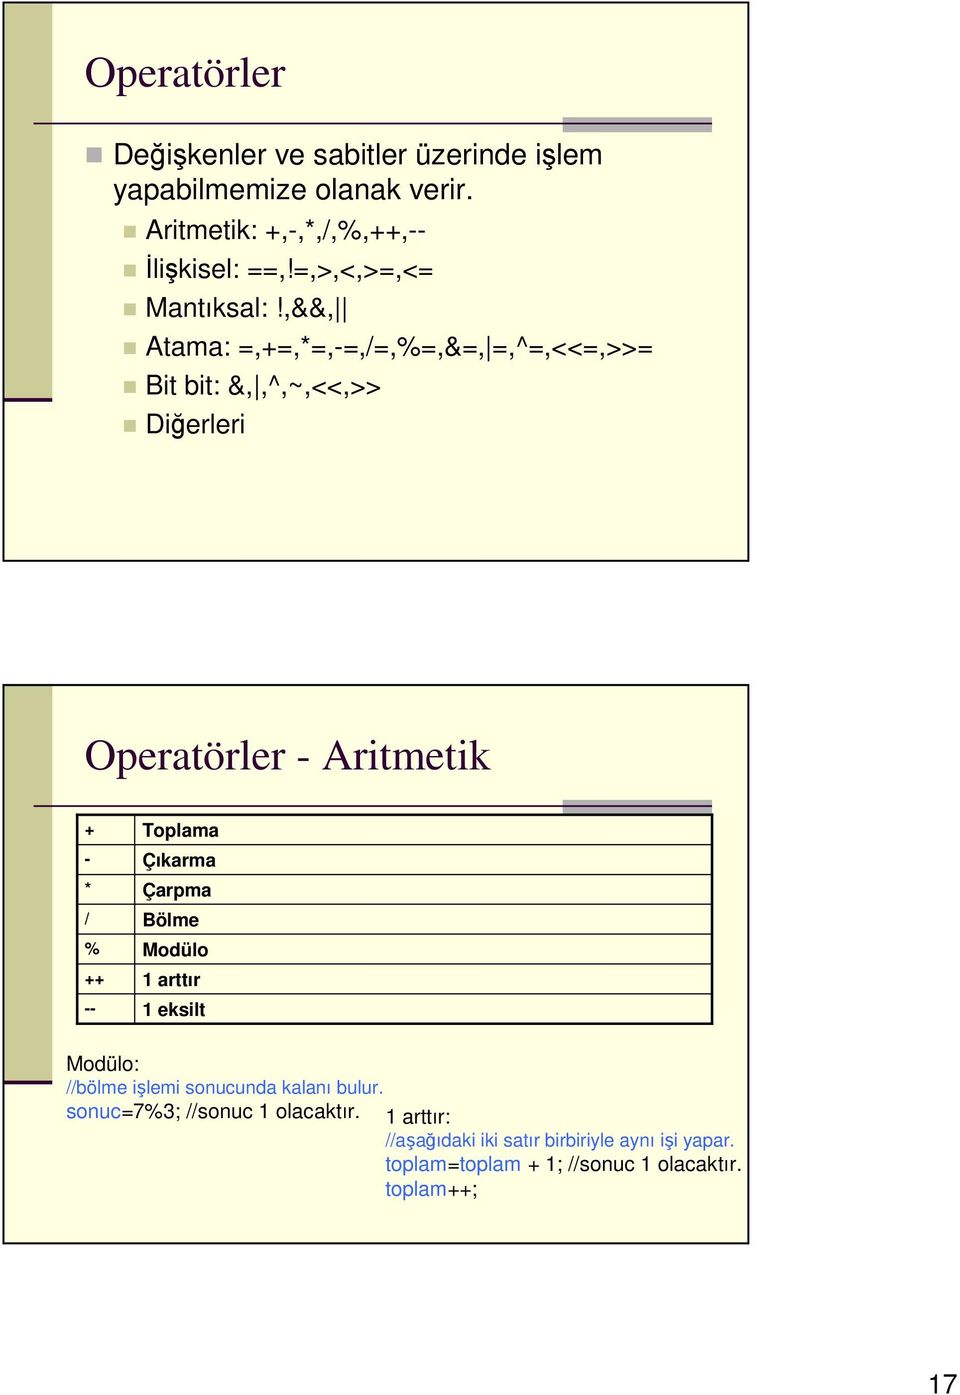 ,&&, Atama: =,+=,*=,-=,/=,%=,&=, =,^=,<<=,>>= Bit bit: &,,^,~,<<,>> Diğerleri Operatörler - Aritmetik + - * / % ++ -- Toplama